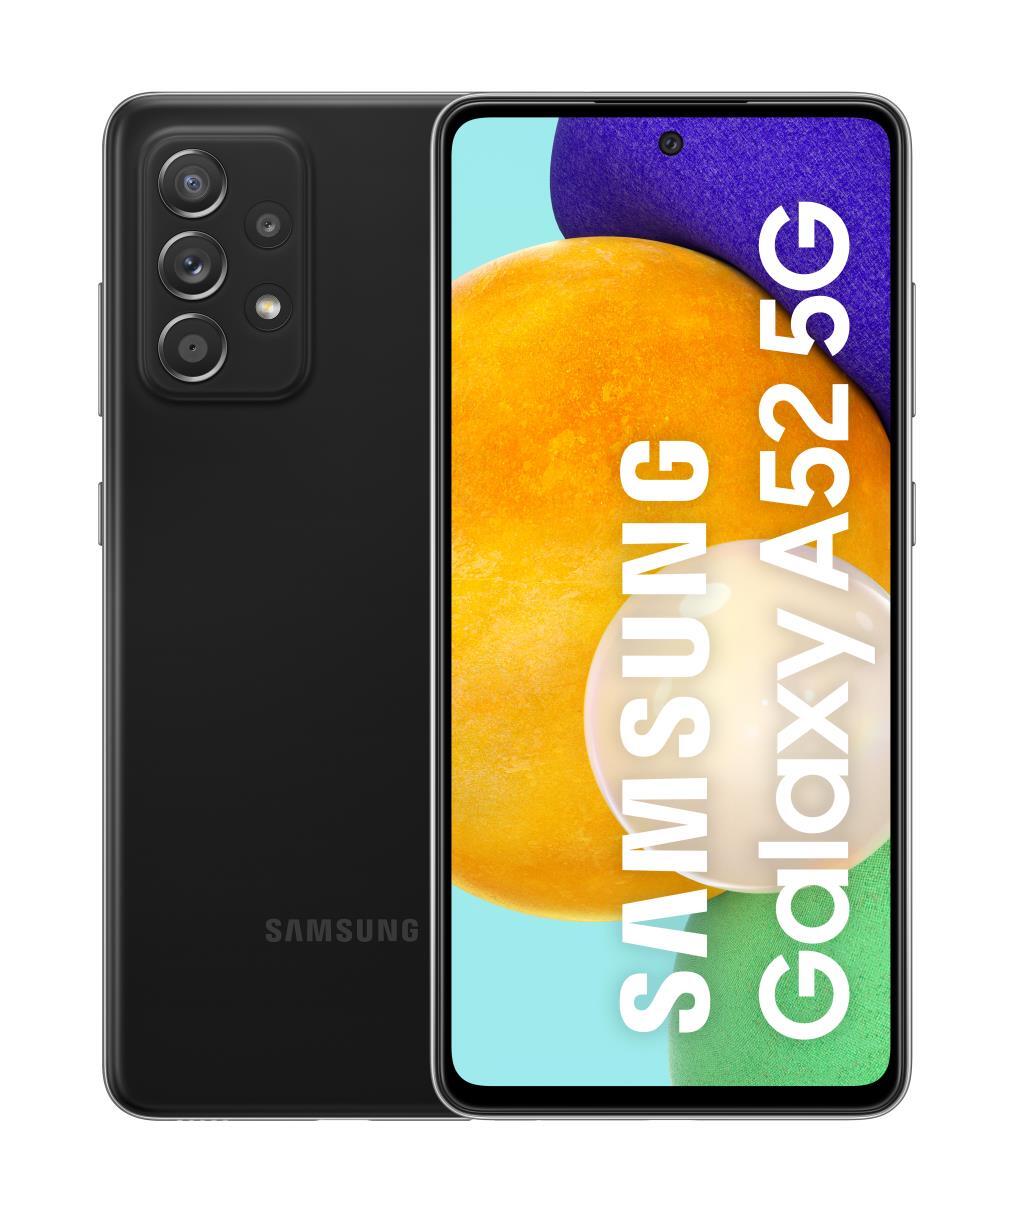 Samsung Galaxy A52 5g 128gb+6gb ram smartphone con pantalla infinityo fhd+ de 65 pulgadas 6 y 128 memoria interna ampliable batería 4500 mah carga negro version es 6gb 128gb 6.5 sdm720g 11 6128gb 2.2ghz 1651 65“ 1286gb 6gb128gb